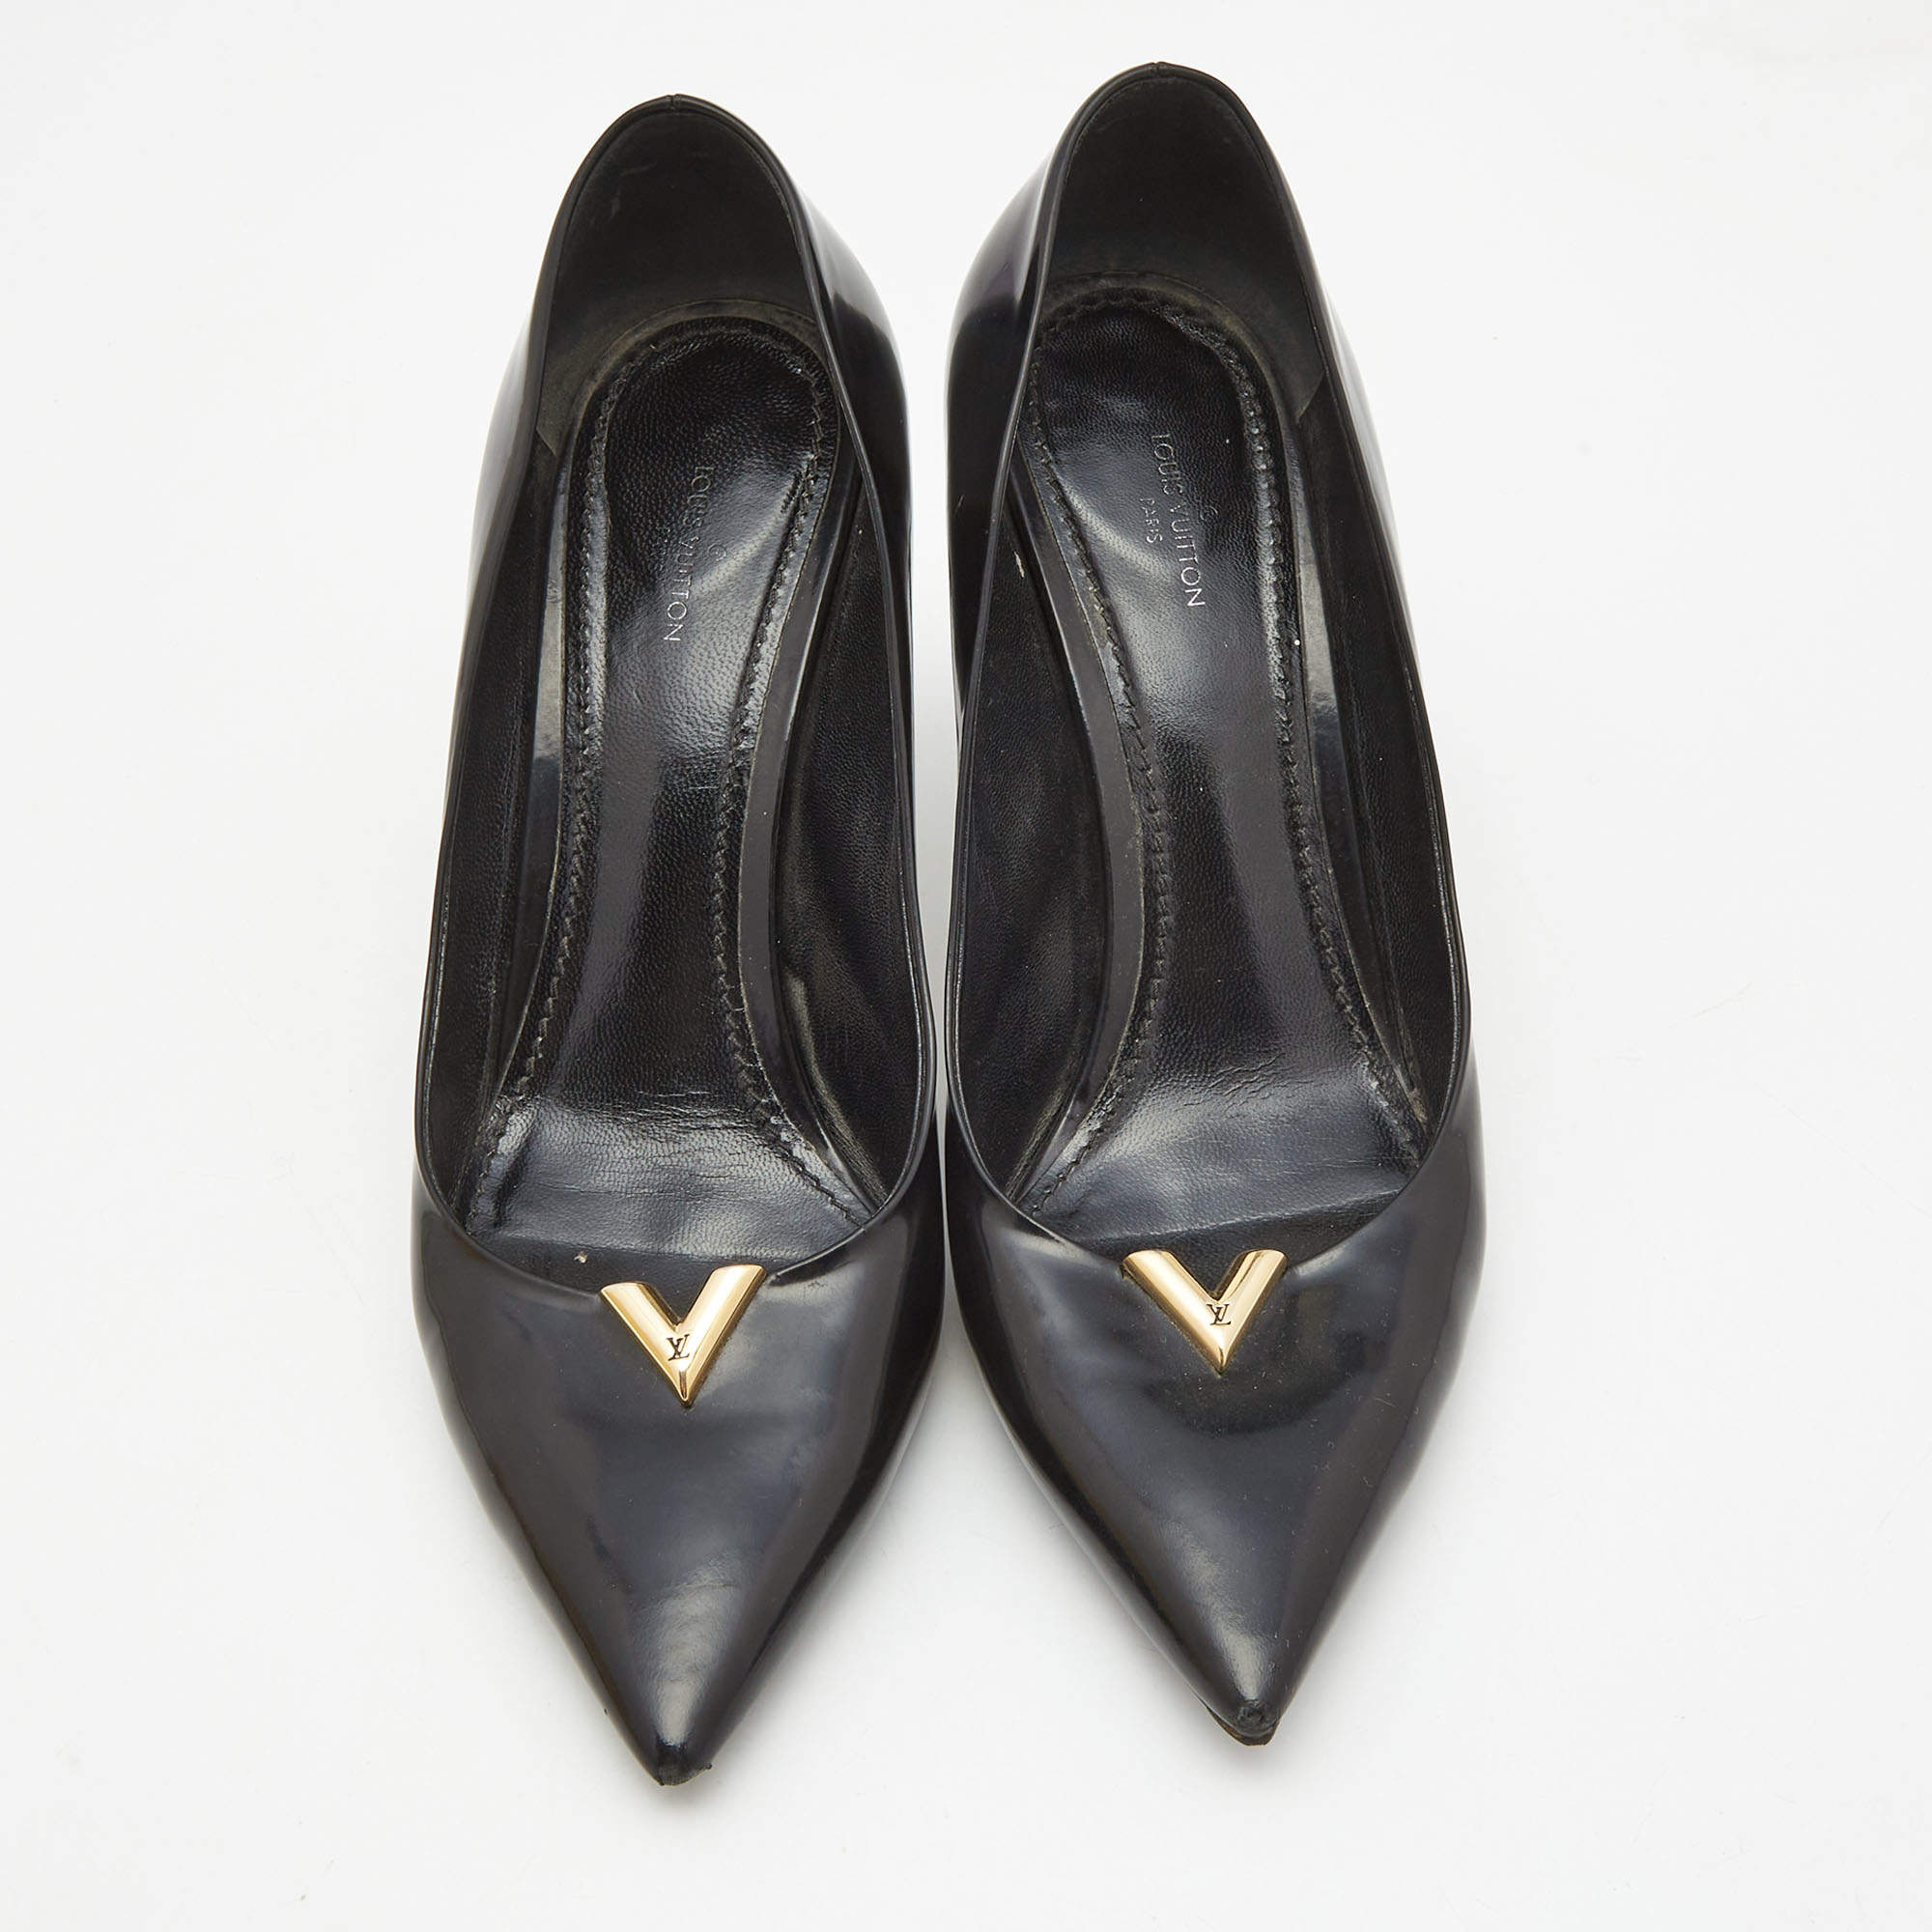 Heartbreaker leather heels Louis Vuitton Black size 37 EU in Leather -  36341072